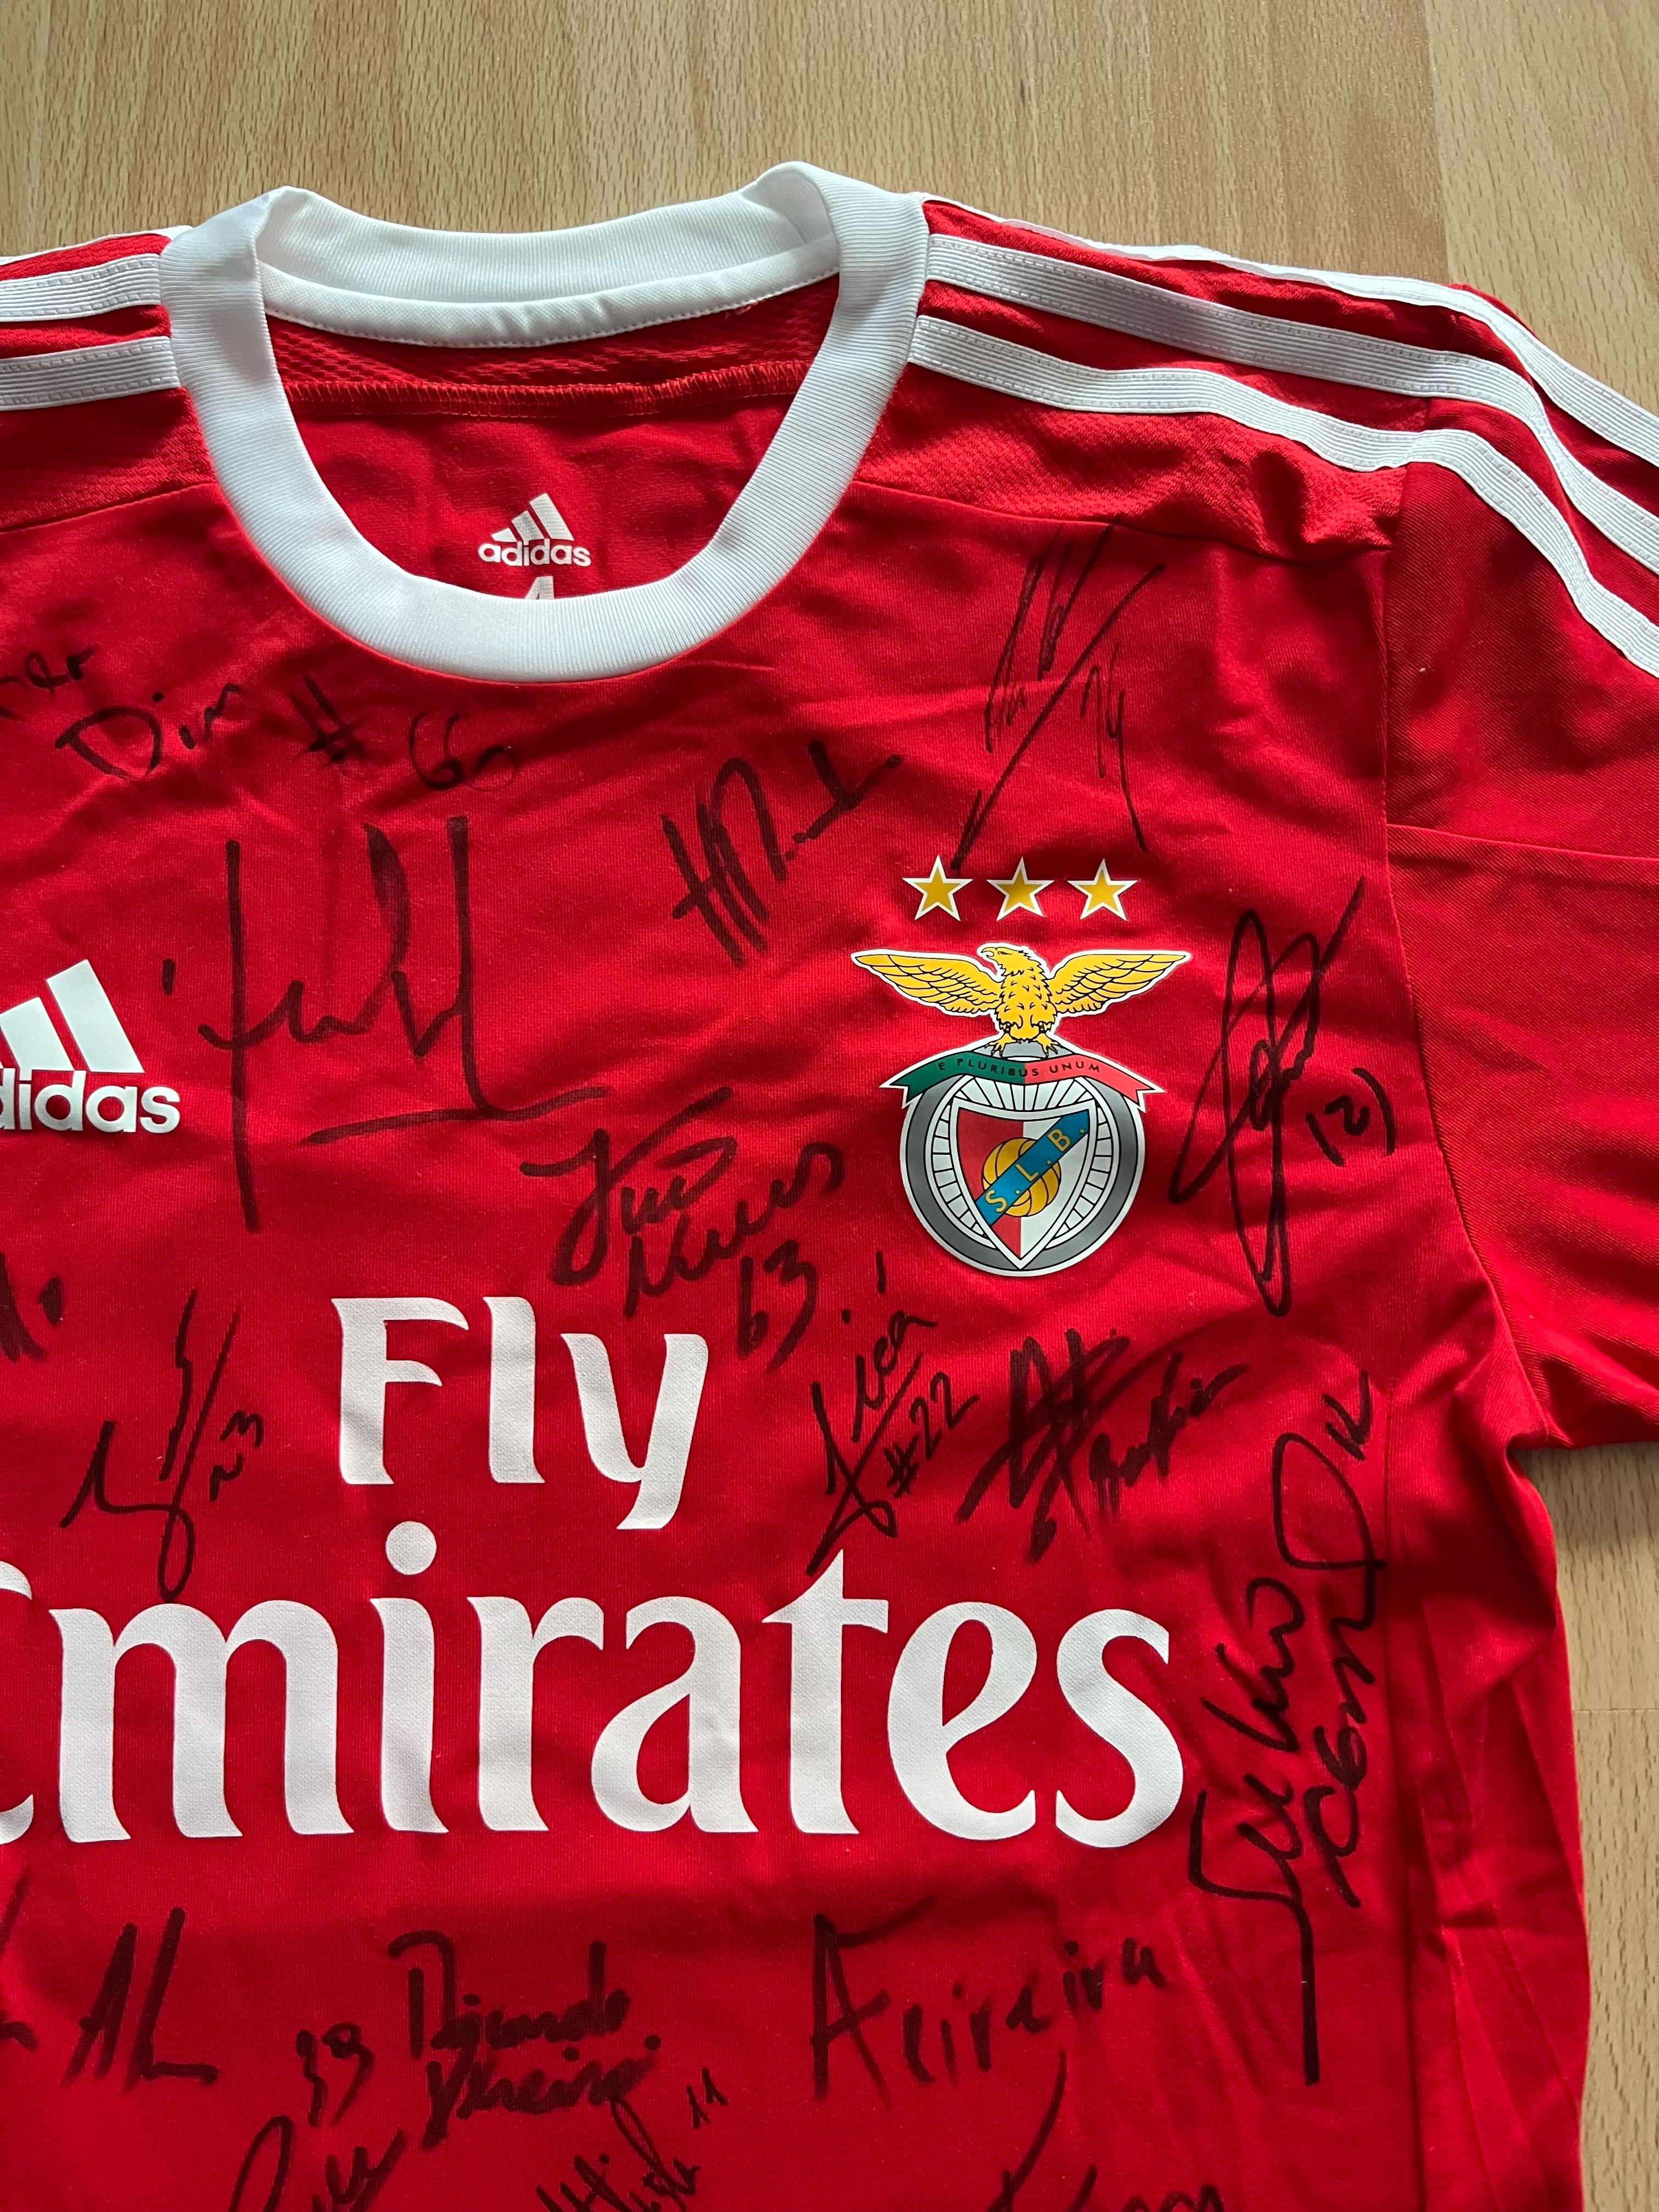 T-shirt oficial do Benfica assinada por todo o plantel (coleção)